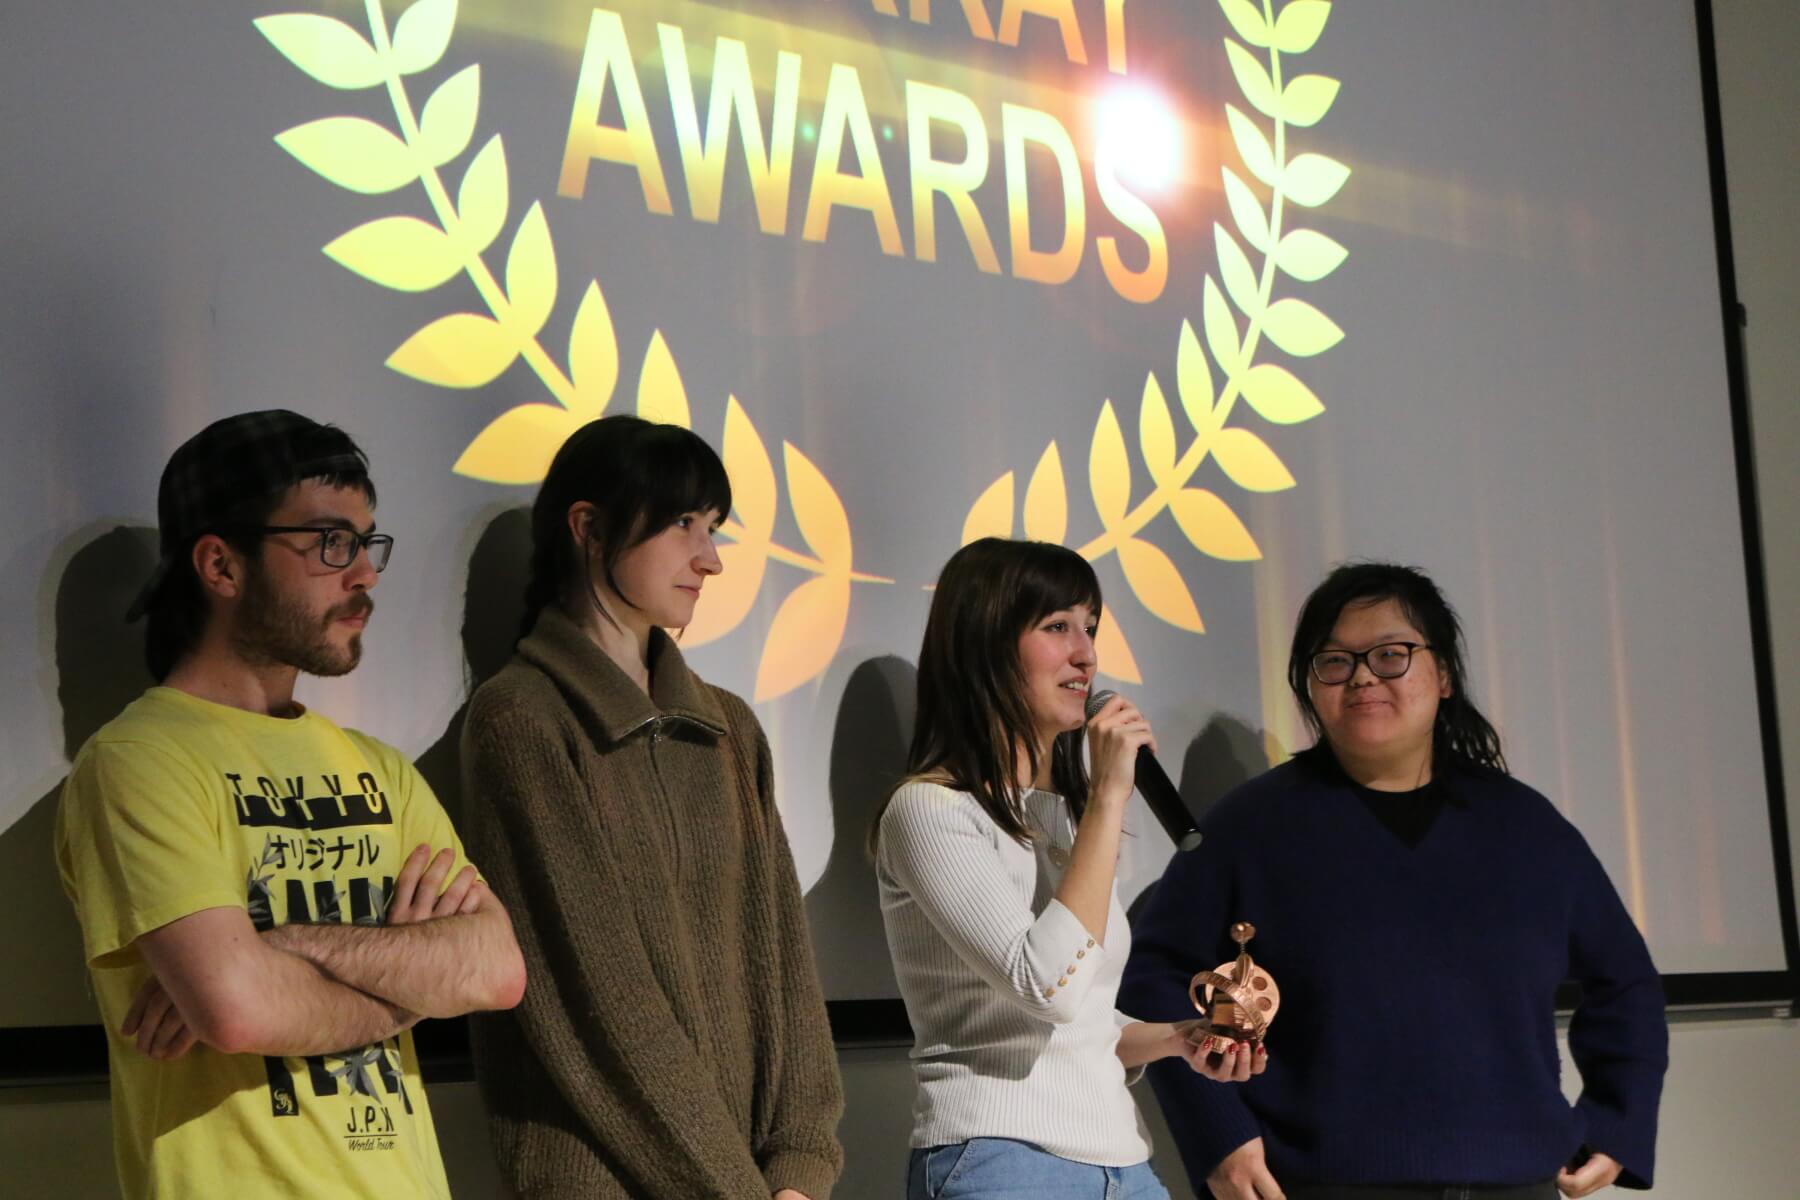 Un equipo de cine estudiantil habla durante el espectáculo de premios tras recibir un galardón